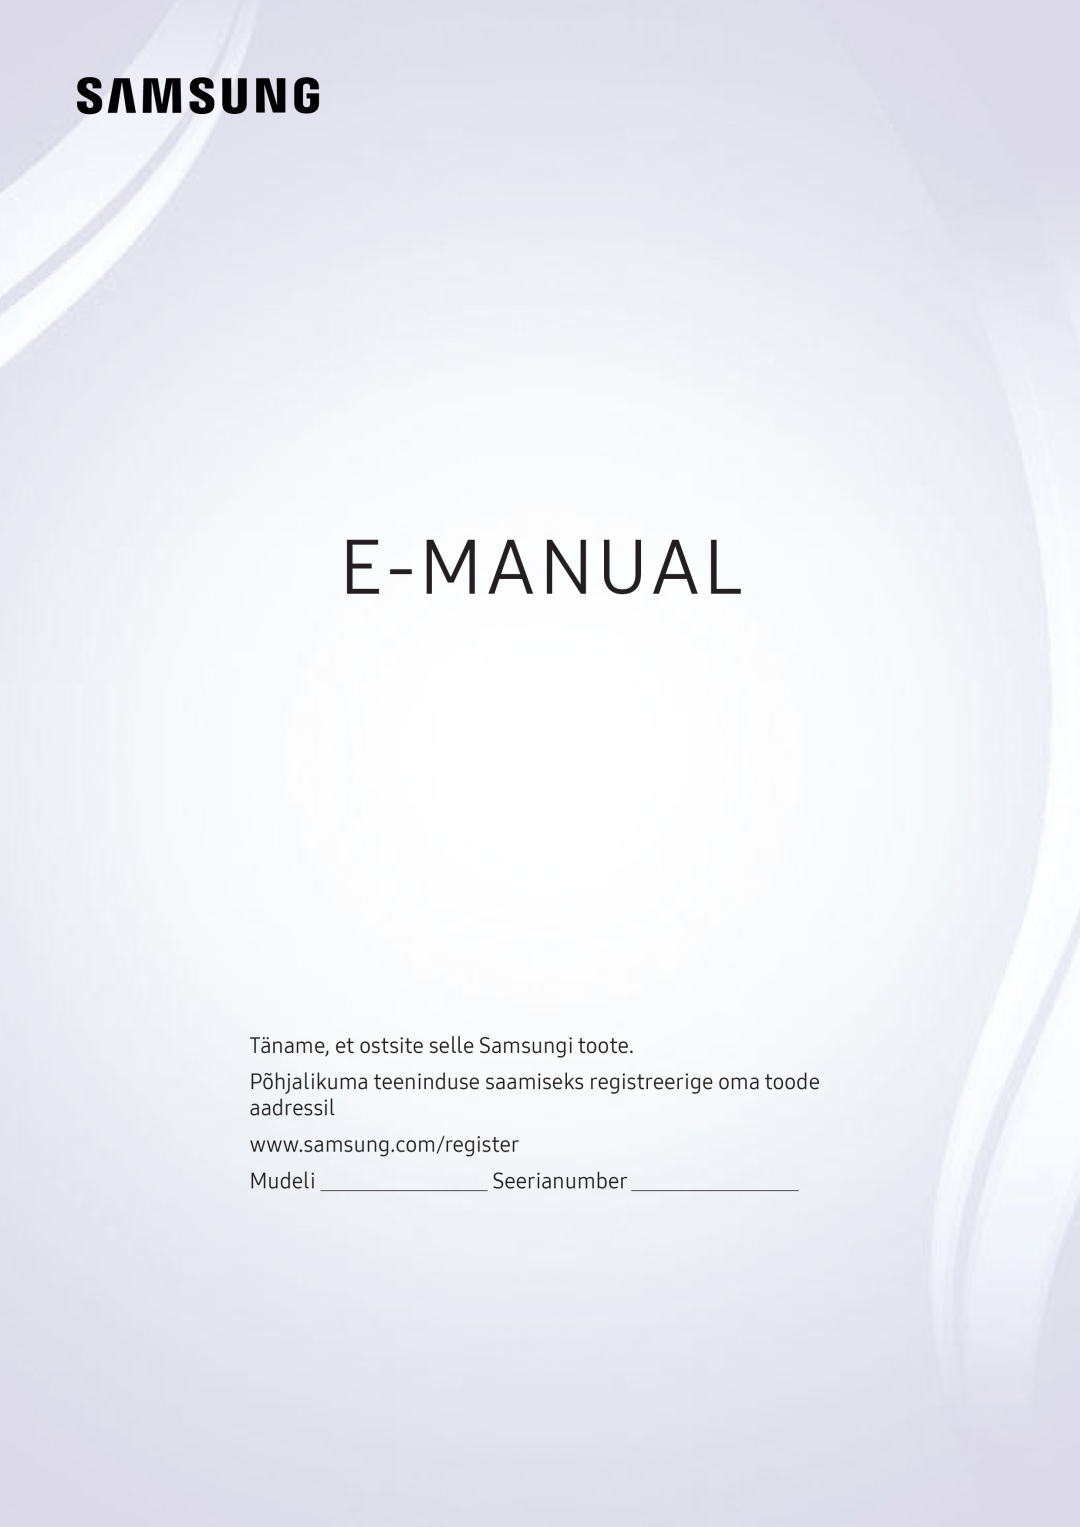 Samsung UE49KS9002TXXH, UE50KU6000WXXH manual E-Manual, Täname, et ostsite selle Samsungi toote, MudeliSeerianumber 